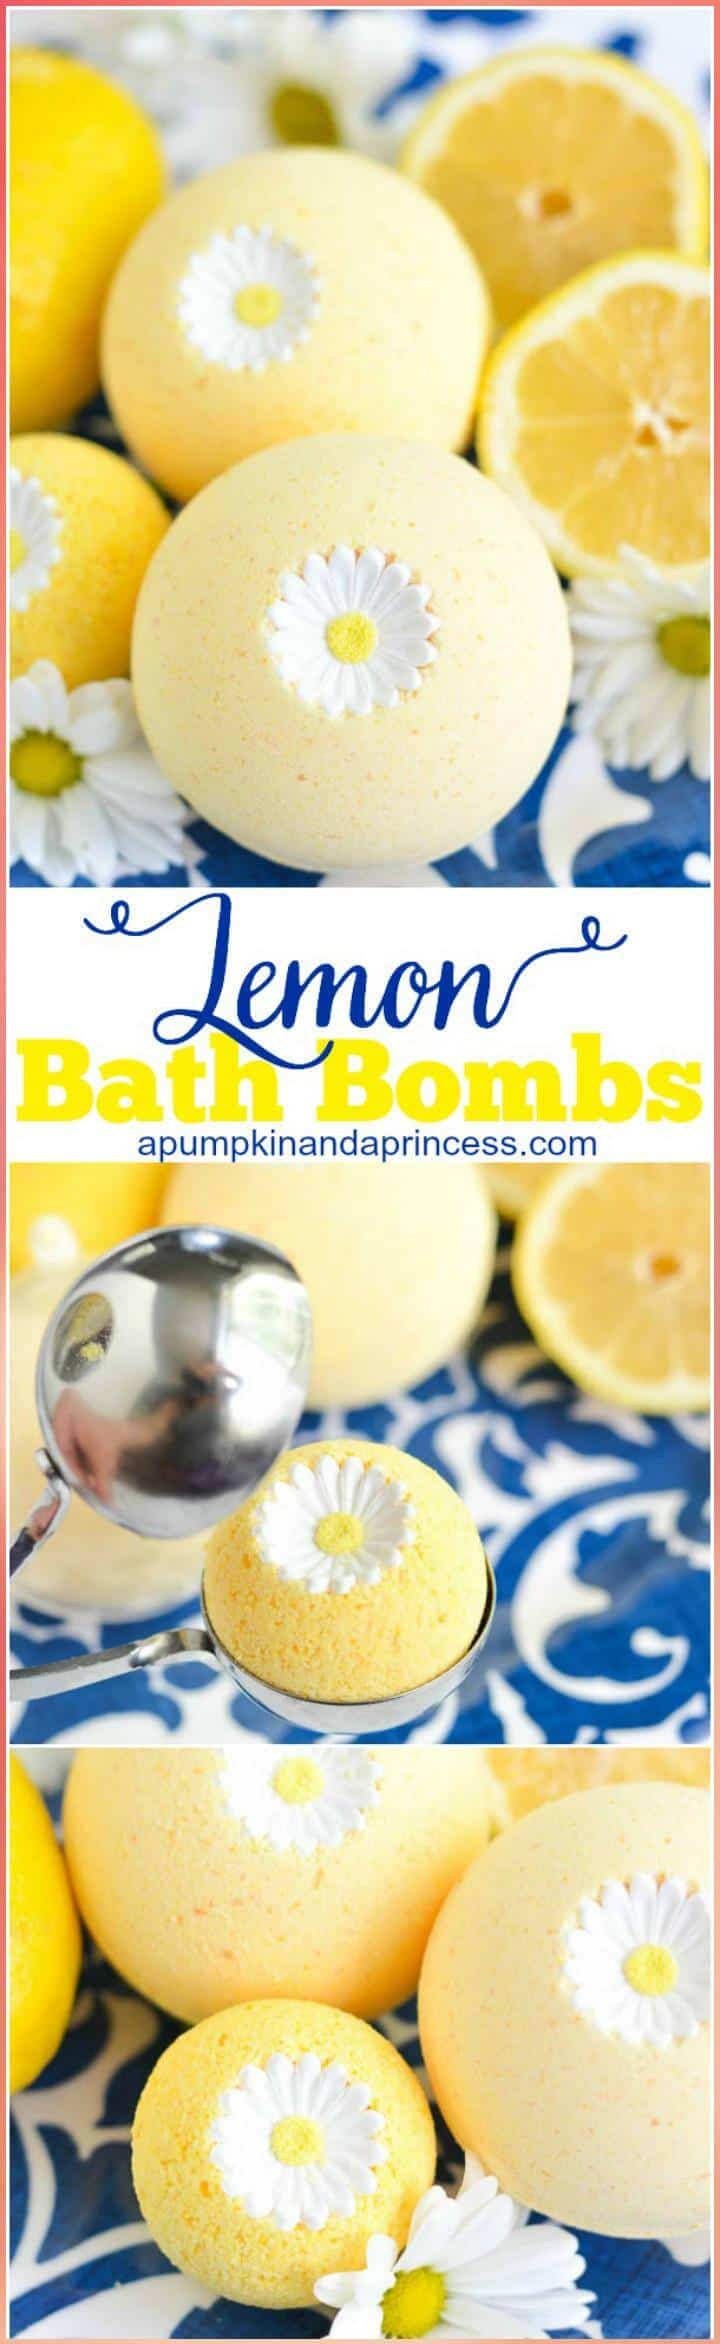 Easy lemon bath boms regalo del día de la madre